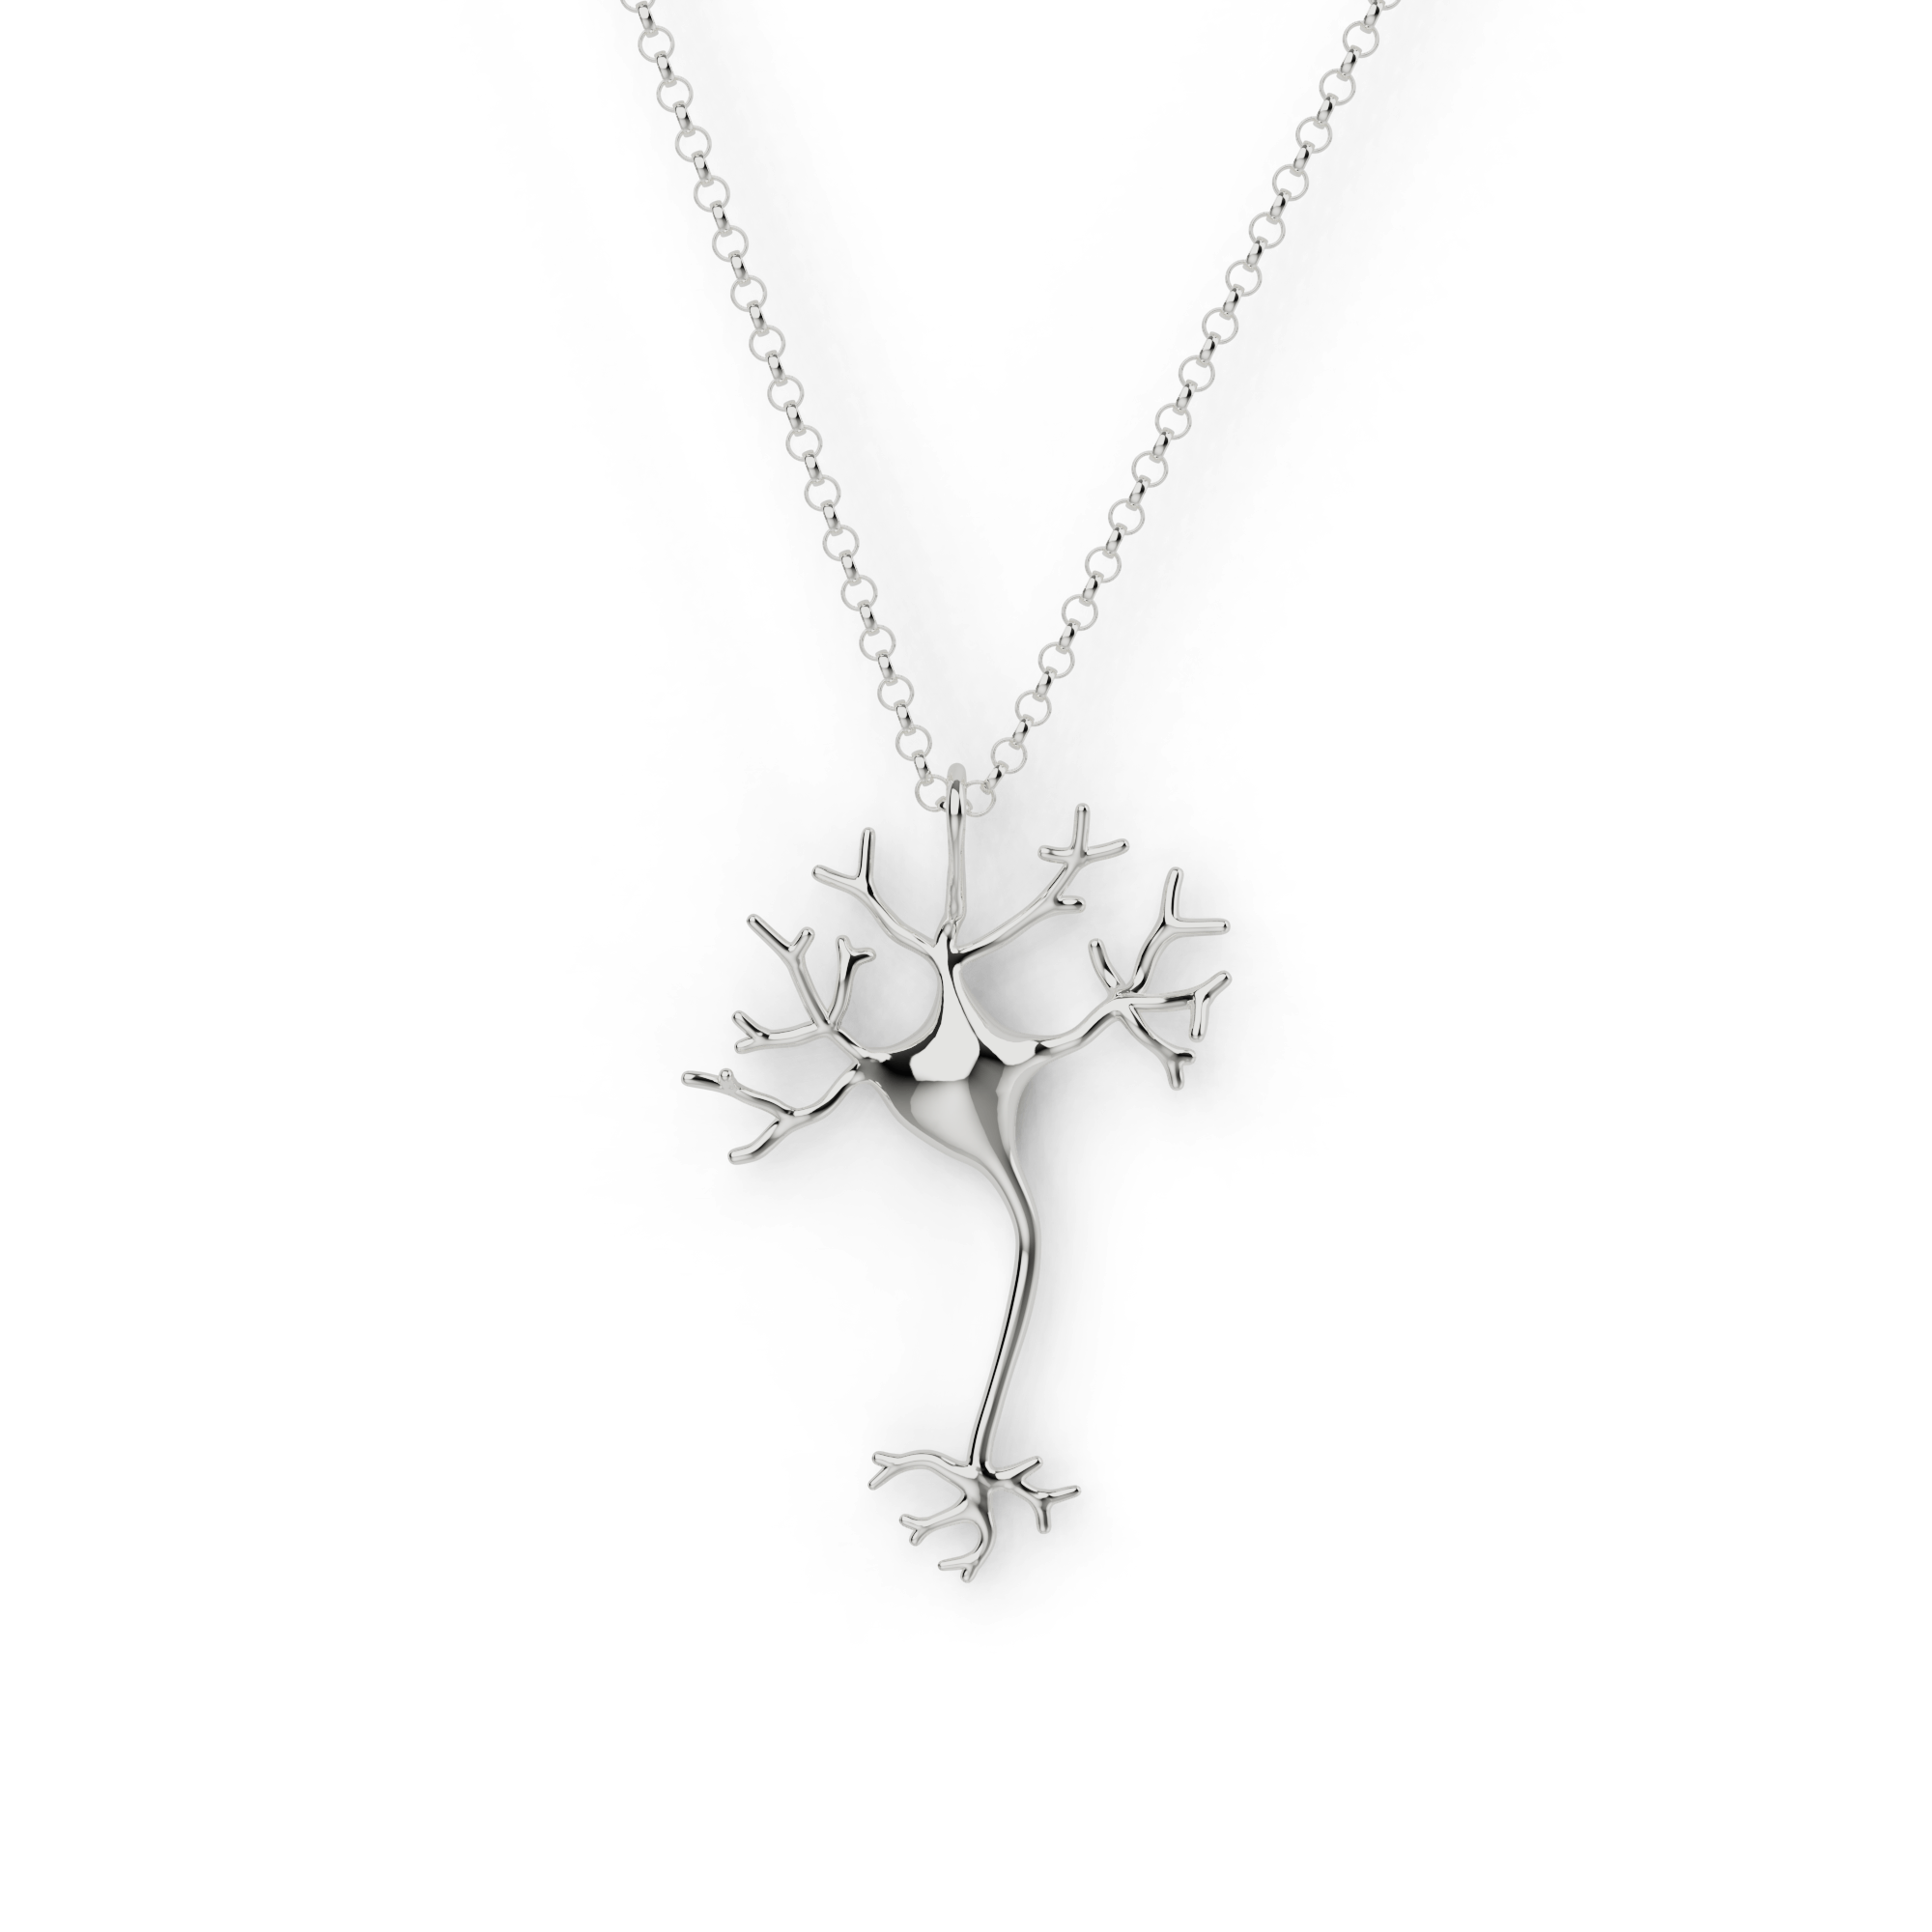 neuron necklace | silver